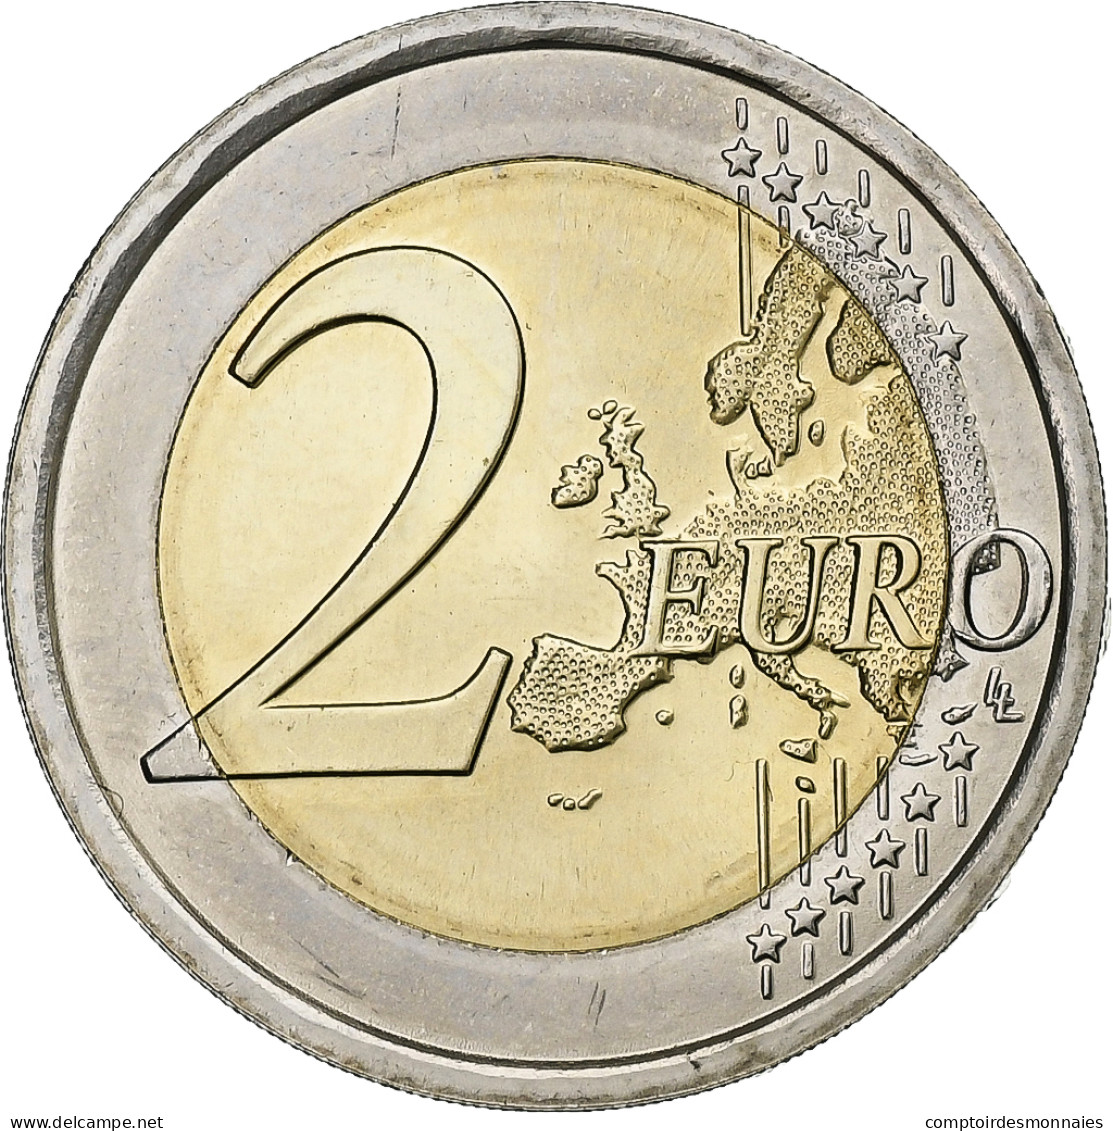 Slovénie, 2 Euro, 2018, Bimétallique, SPL - Slovénie